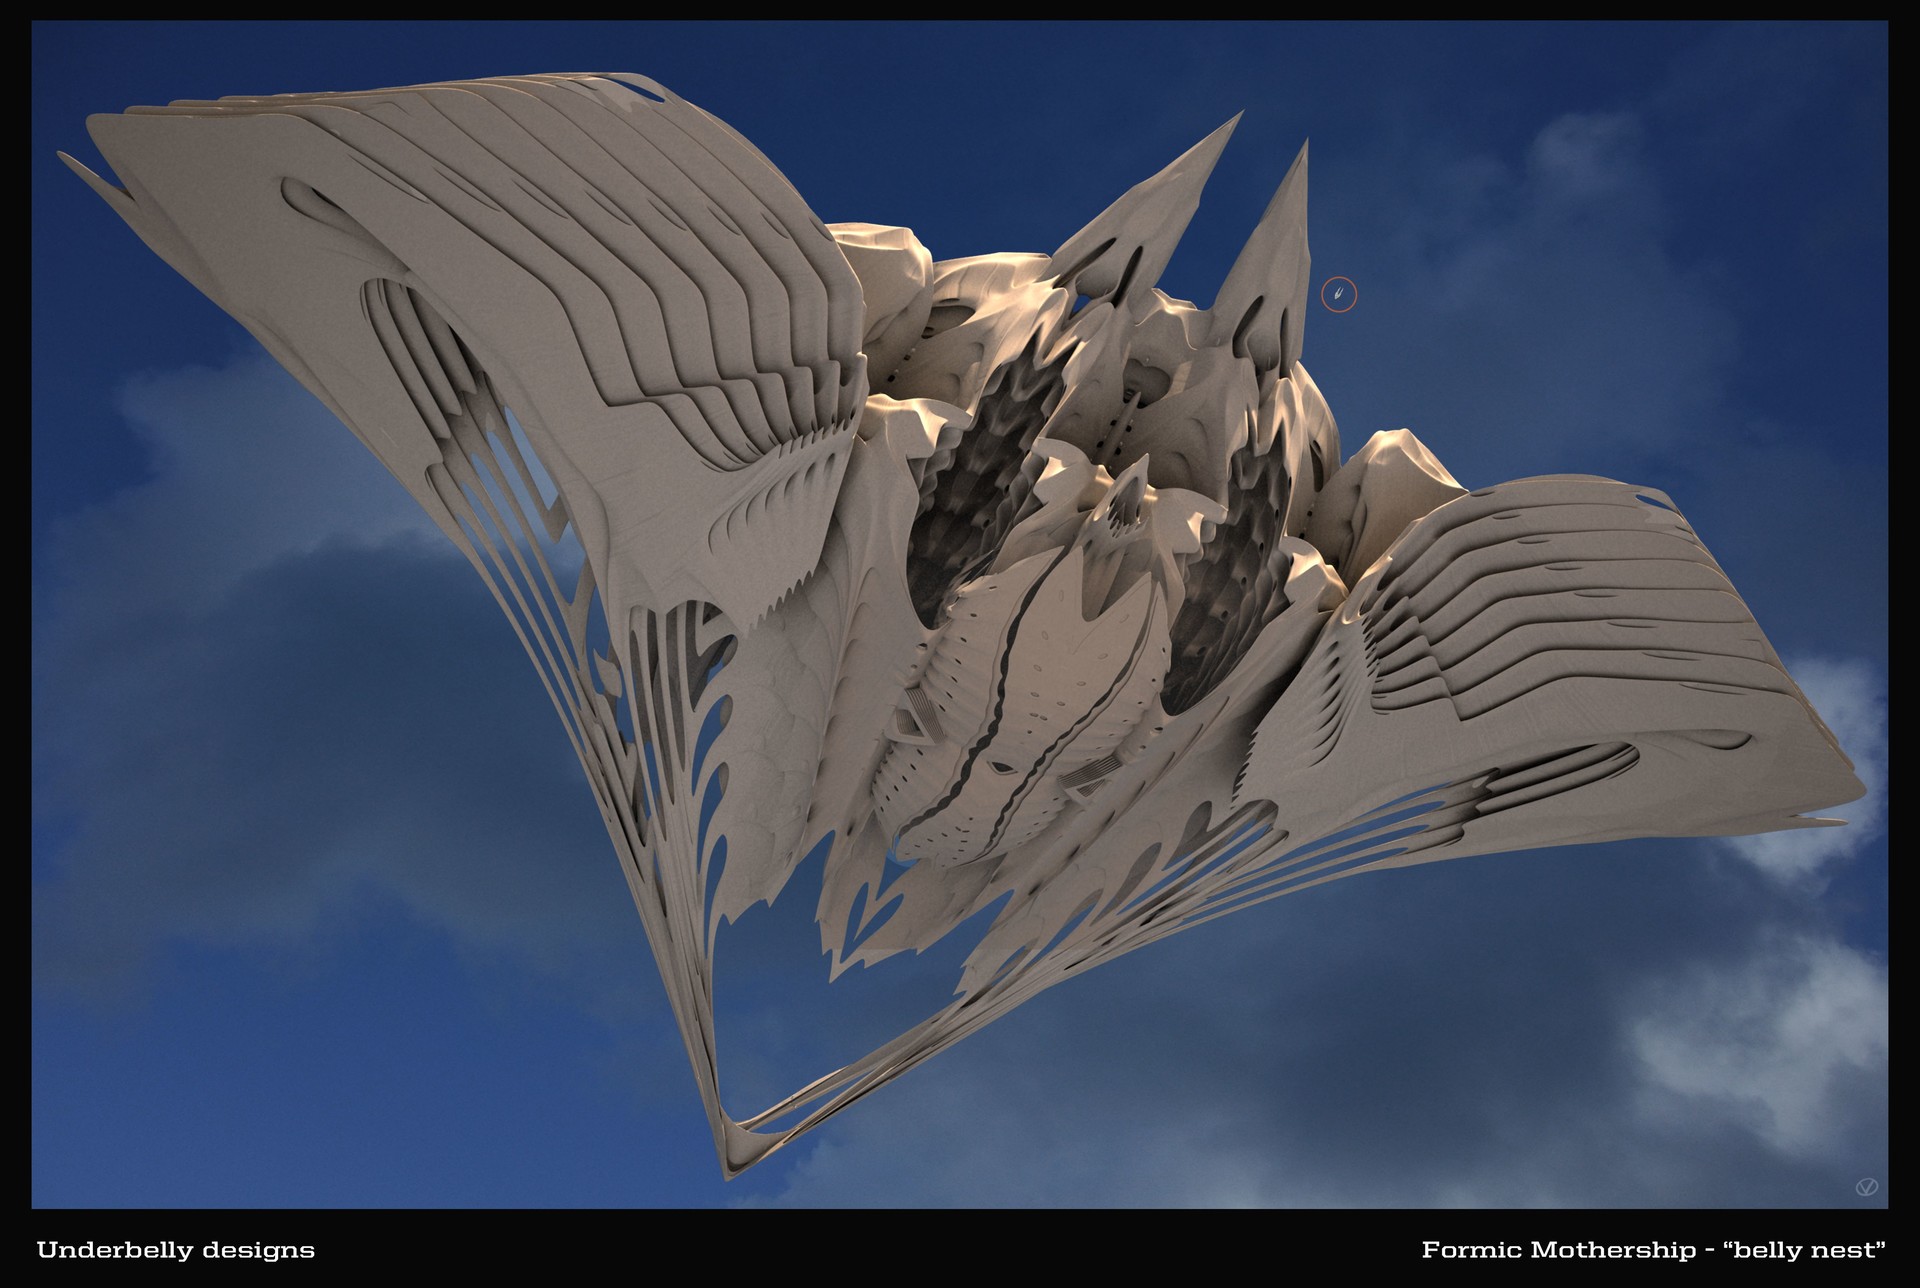 电影 Ender's Game 概念艺术作品-David Levy-53.jpg